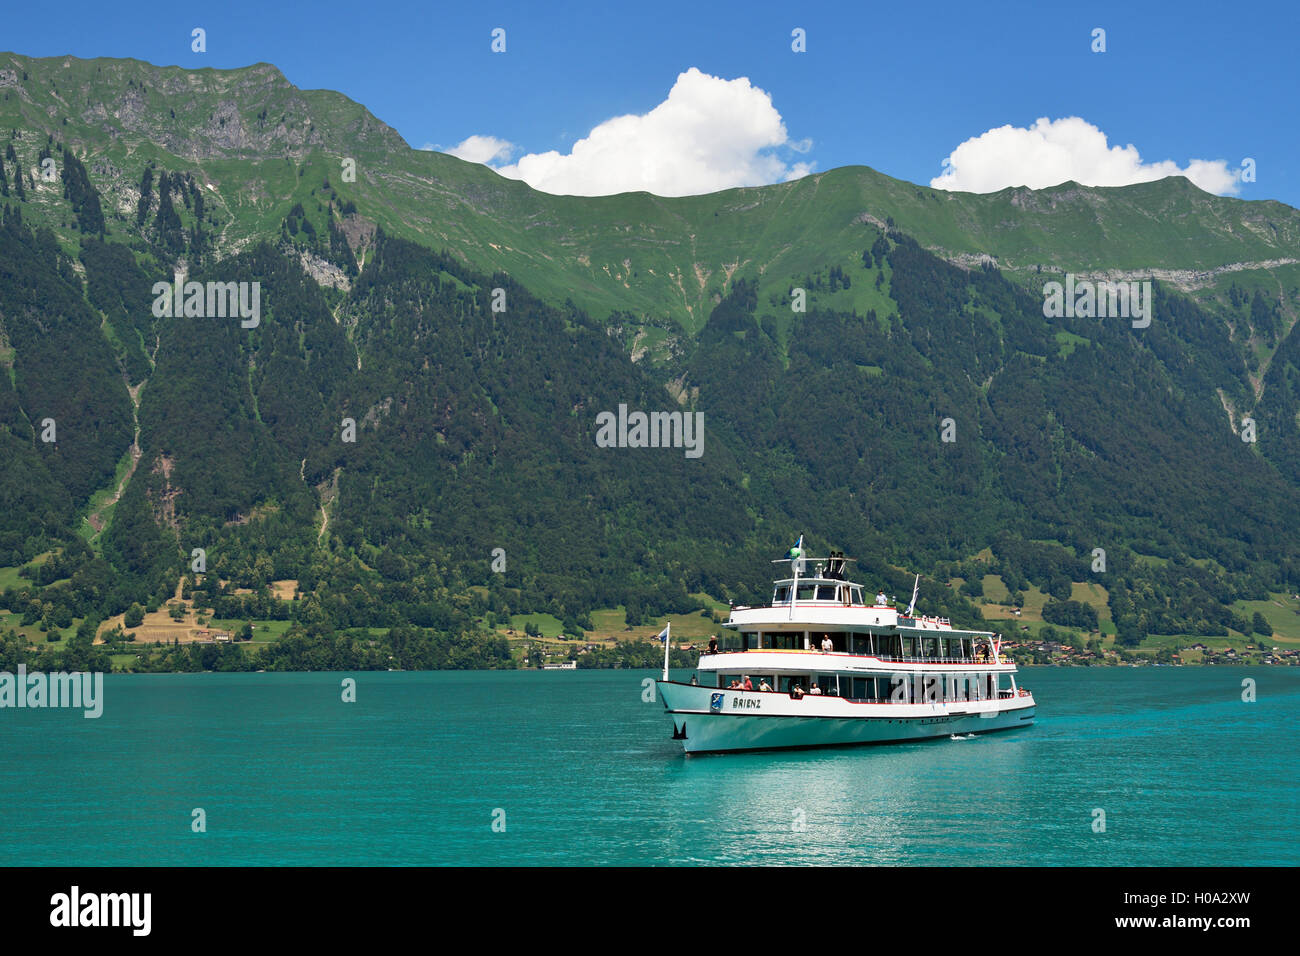 Barco de motor en el lago de Brienz, Interlaken Ost, Cantón de Berna, Suiza Foto de stock